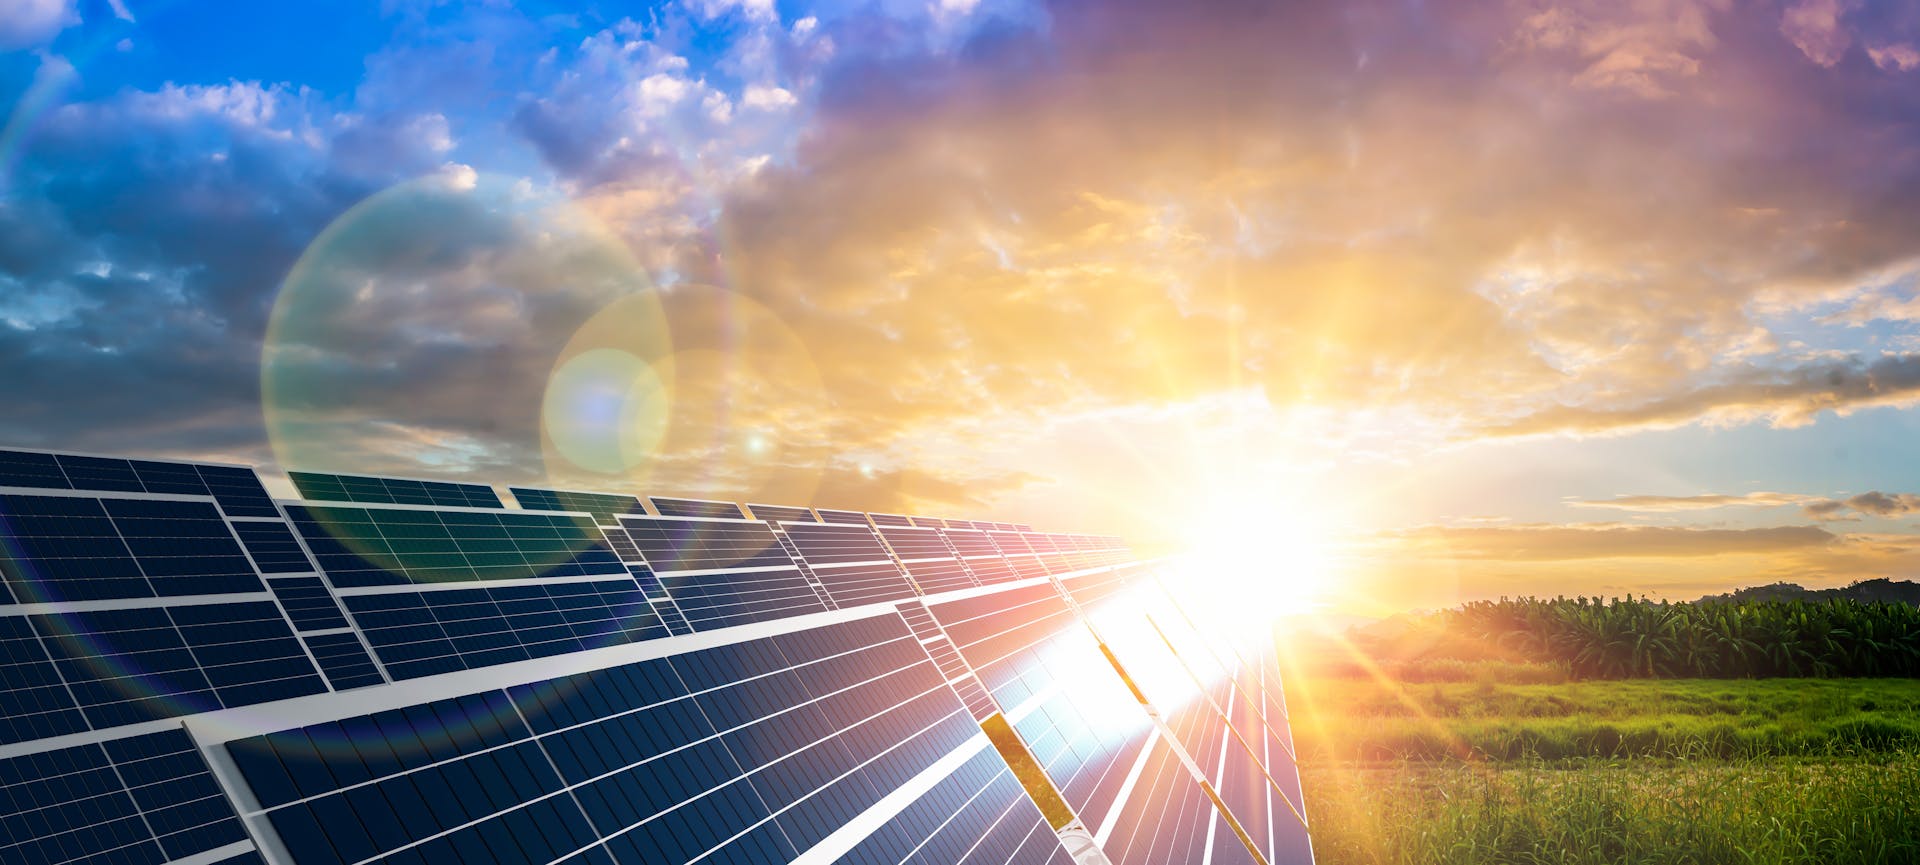 Des panneaux solaires qui produisent de l'électricité grâce à l'énergie du soleil